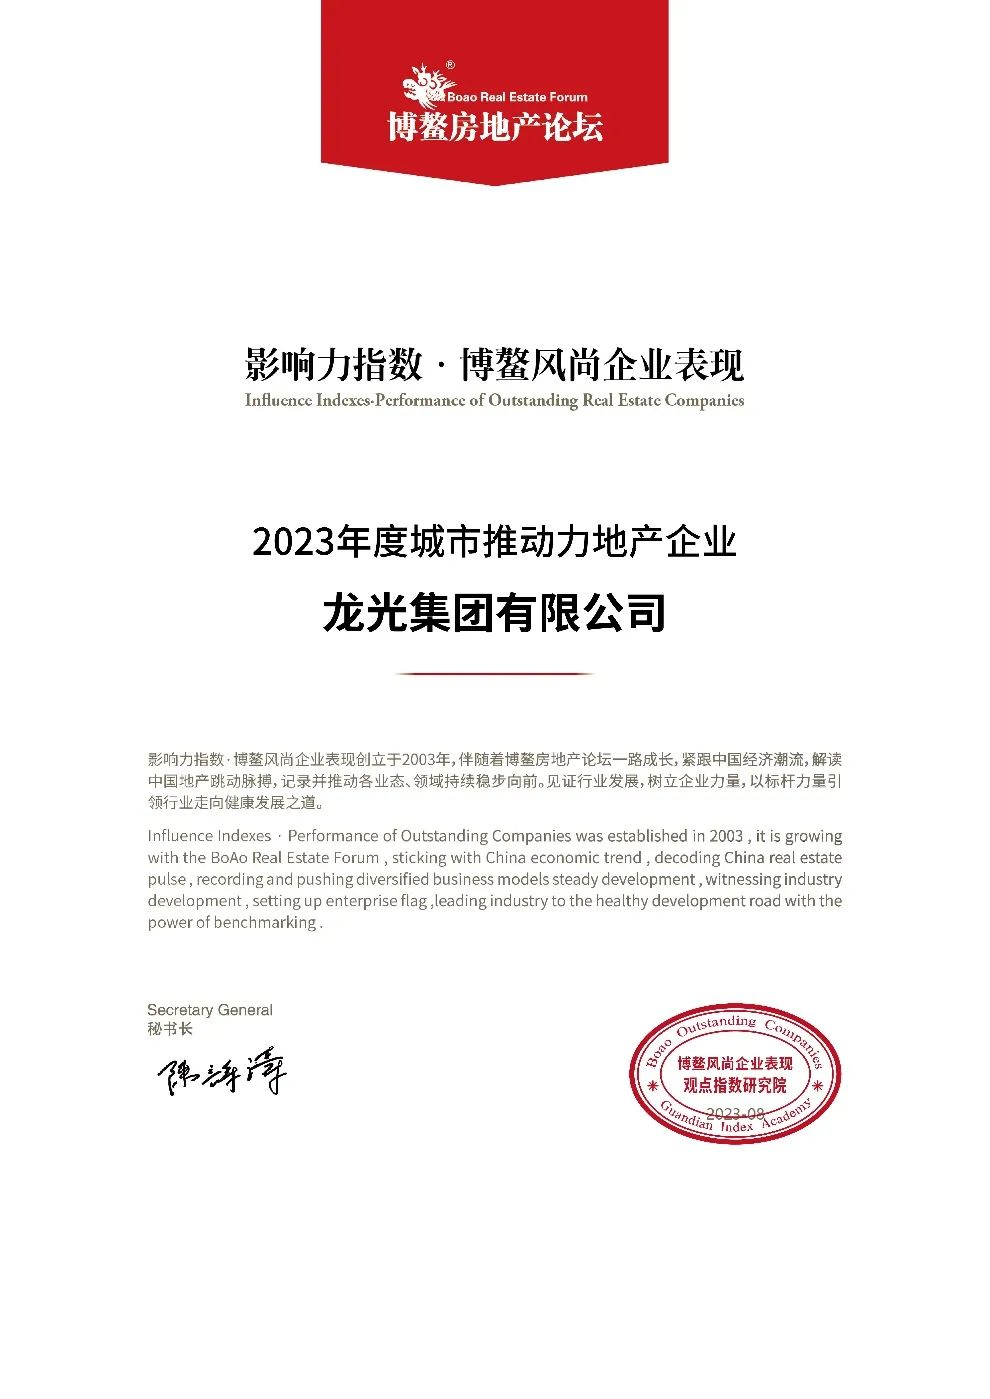 龙光集团旗下上海天曜项目入选“2023年度影响力房地产项目”_中国网地产